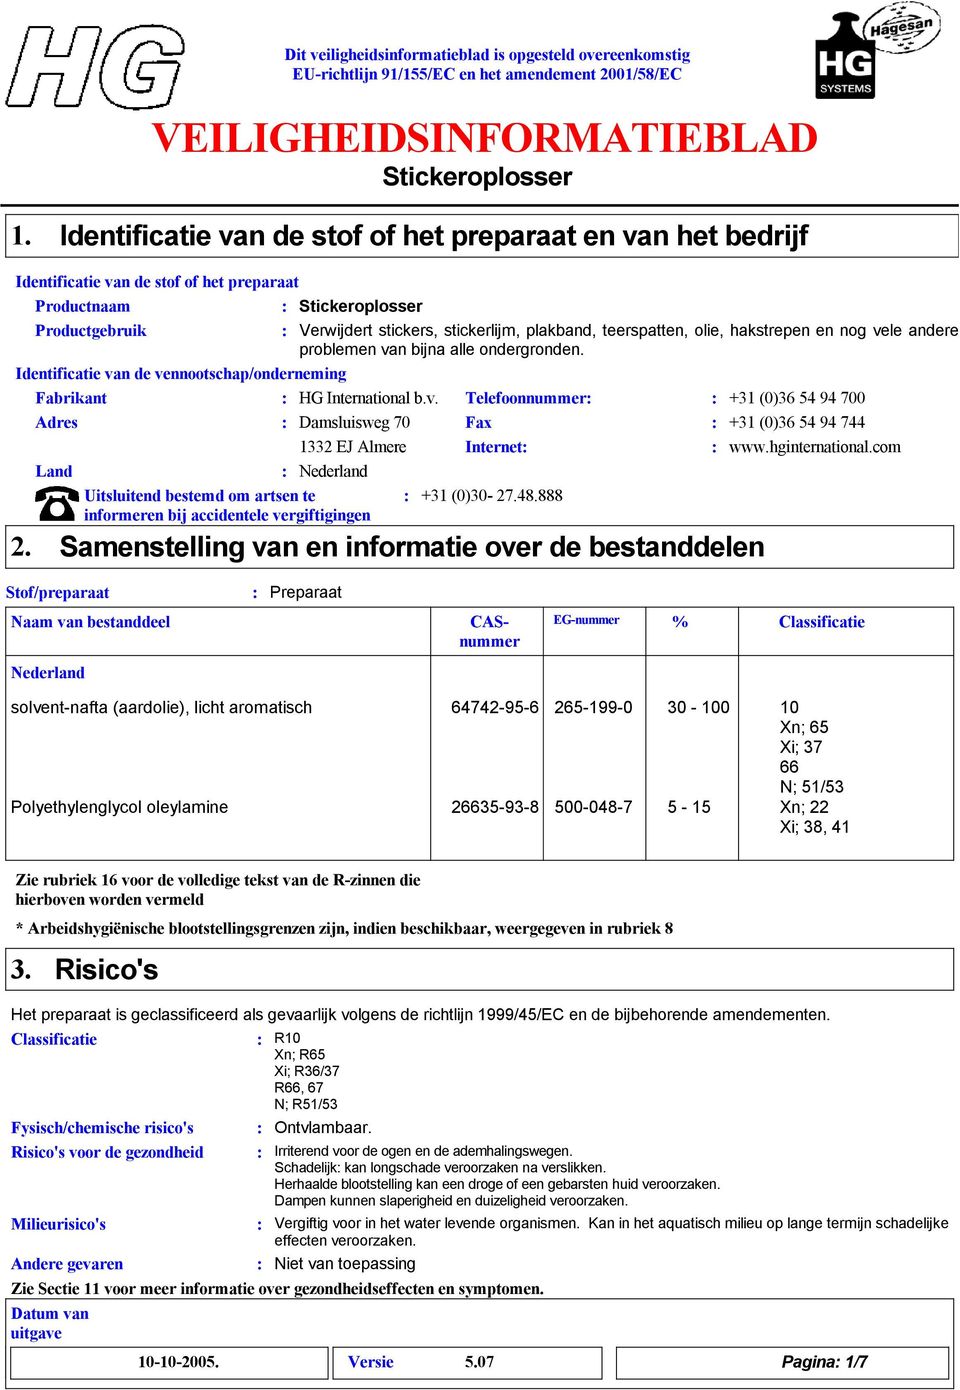 hginternational.com Land Nederland Uitsluitend bestemd om artsen te +1 (0)0-27.48.888 informeren bij accidentele vergiftigingen 2.